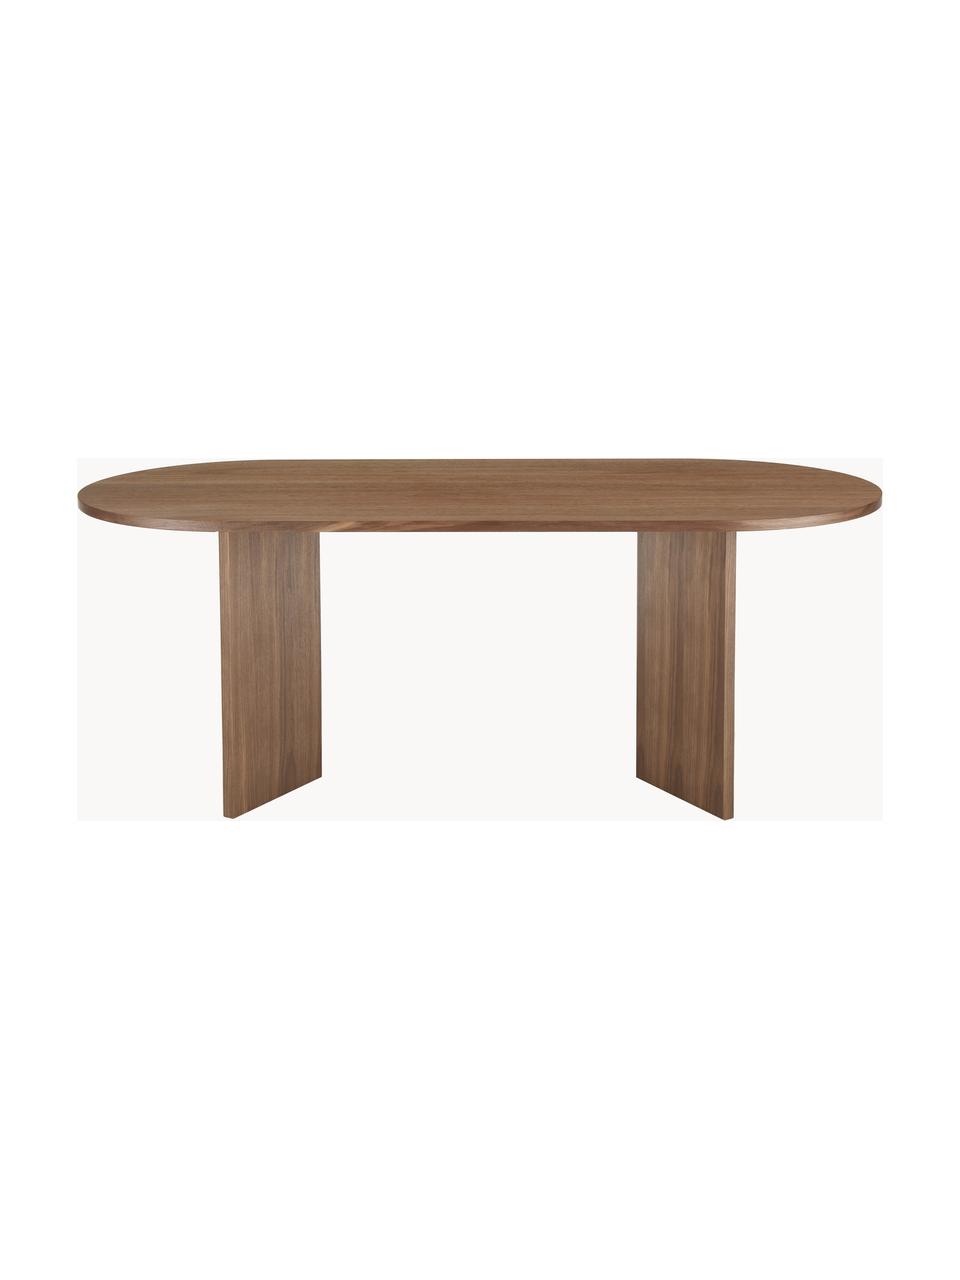 Oválny jedálenský stôl z dreva Toni, 200 x 90 cm, MDF-doska strednej hustoty s dyhou z orechového dreva, lakované

Tento produkt je vyrobený z trvalo udržateľného dreva s certifikátom FSC®., Orechové drevo, Š 200 x V 90 cm